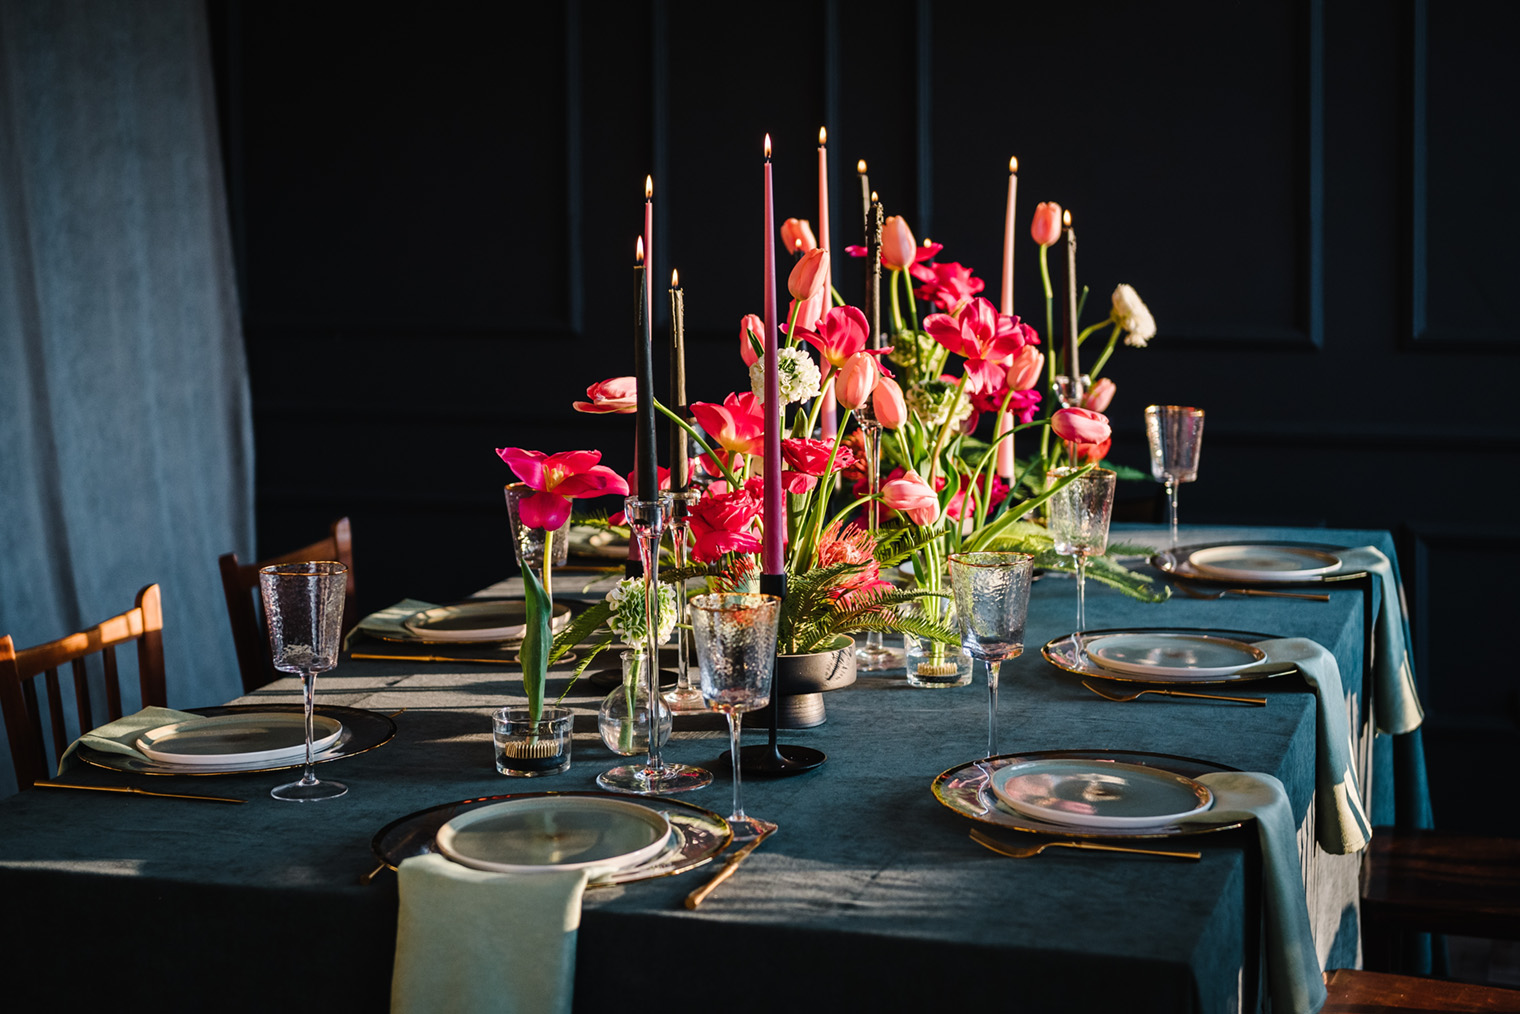 Этот стол украшен темными подсвечниками и яркими цветами. Фотография: Sergii Sobolevskyi / Shutterstock / FOTODOM